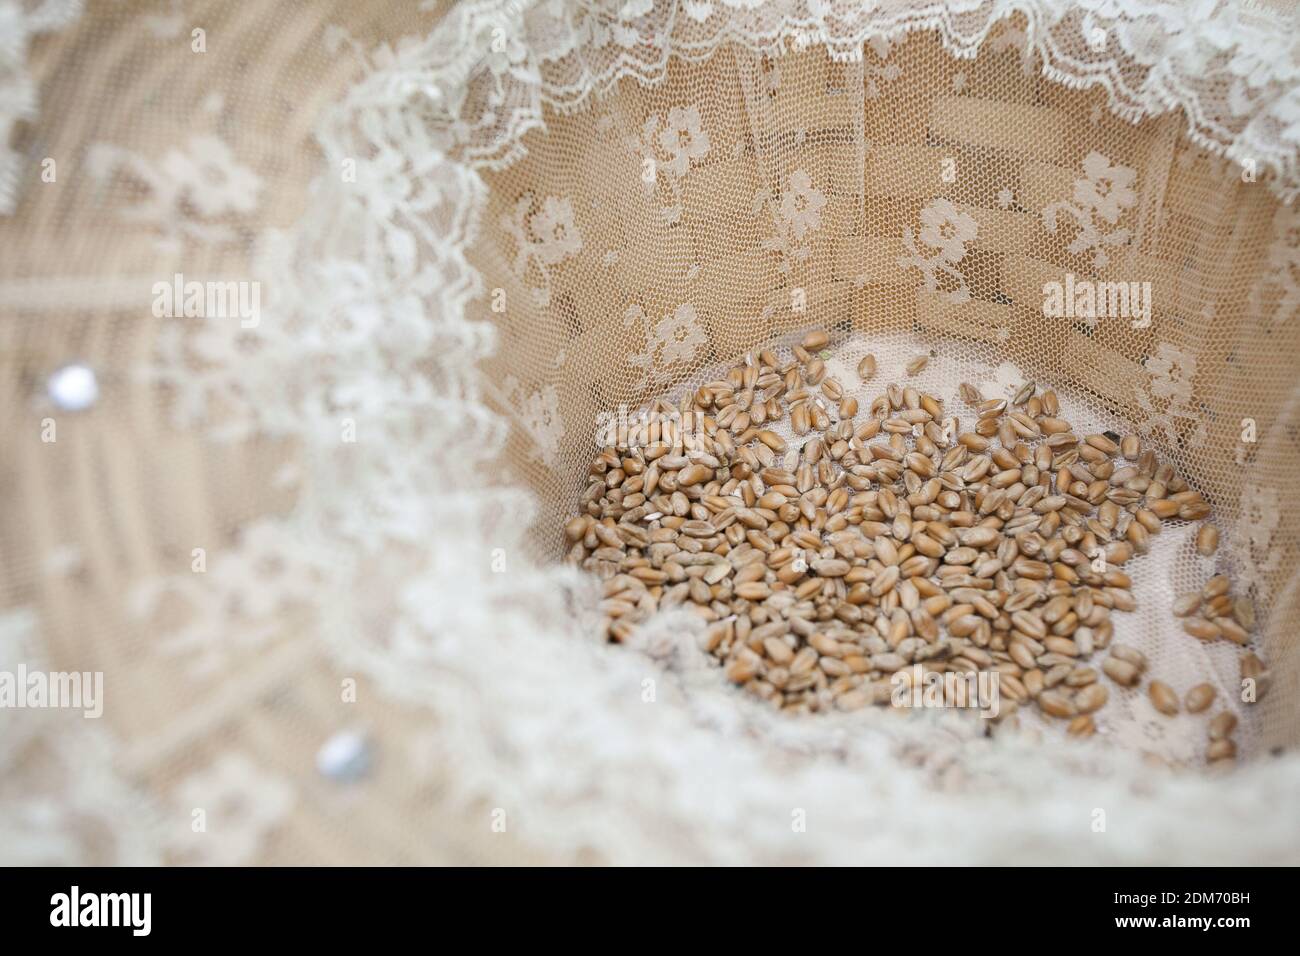 Eine Nahaufnahme eines Weizenkorns in einem Weidenkorb Gefüttert mit Mesh für eine Hochzeitszeremonie Stockfoto